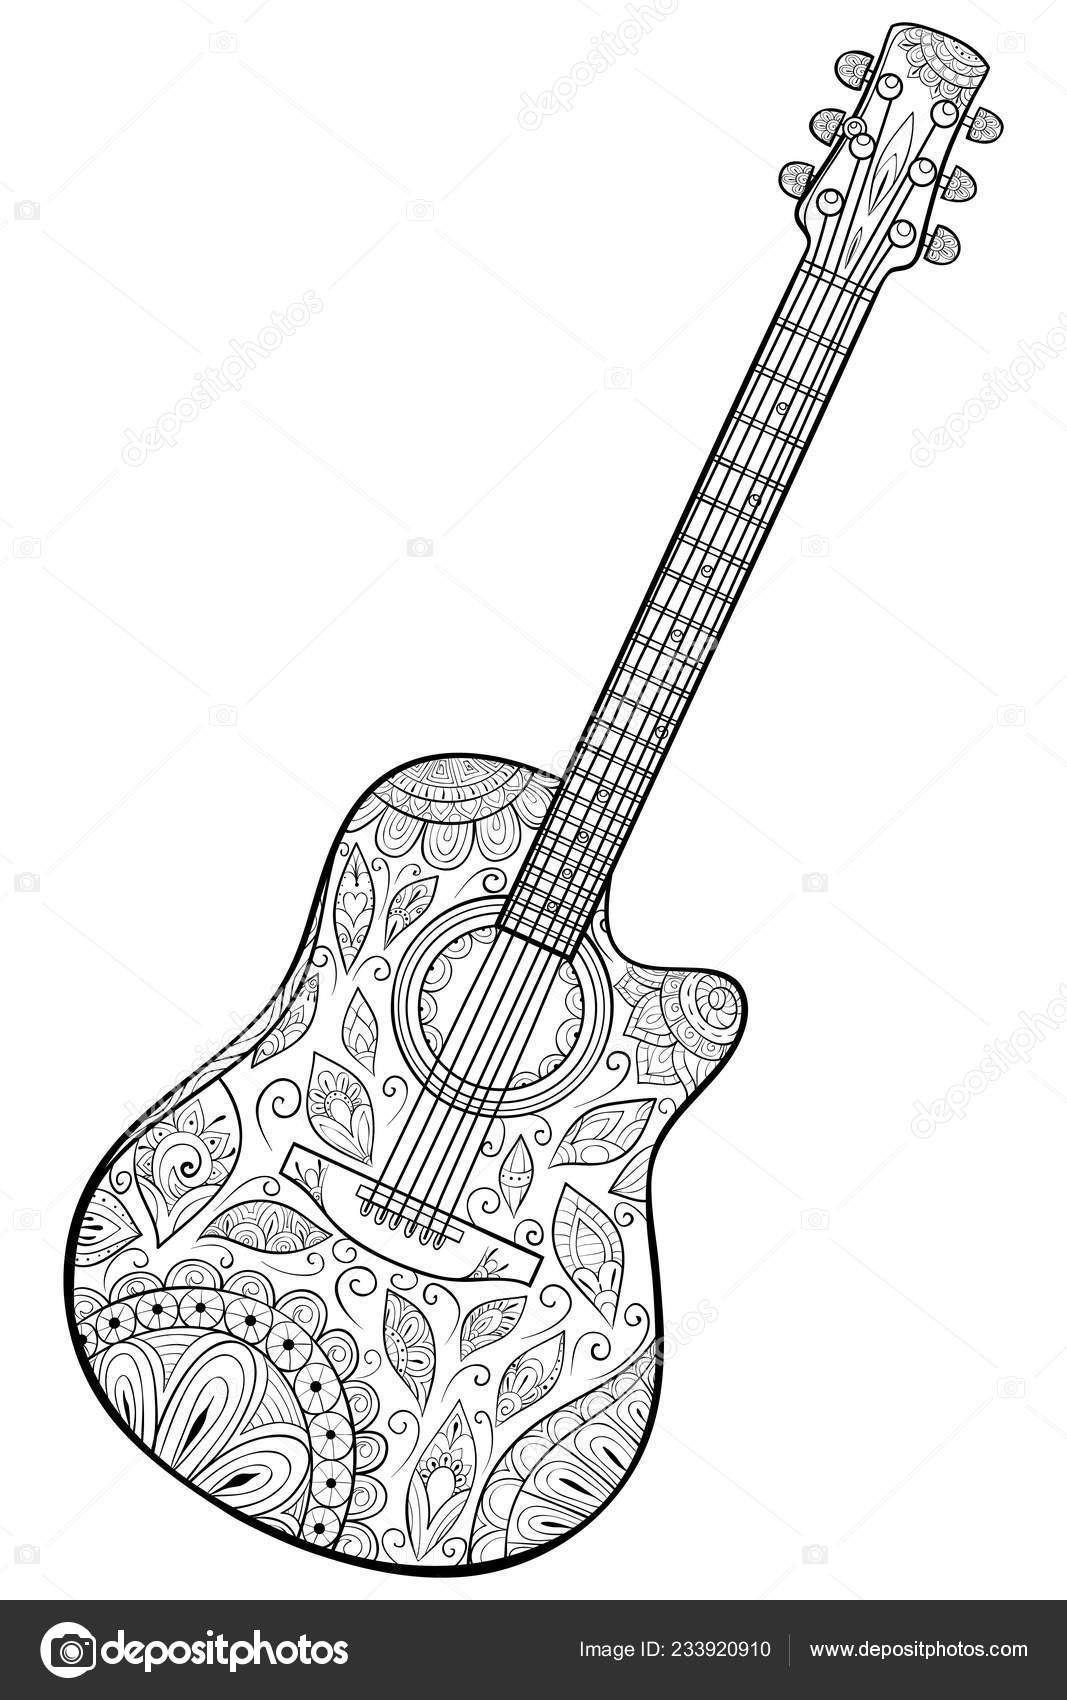 Livre De Coloriage De Guitare électrique Pour Le Vecteur D'adultes  Illustration de Vecteur - Illustration du contour, décoratif: 67952582